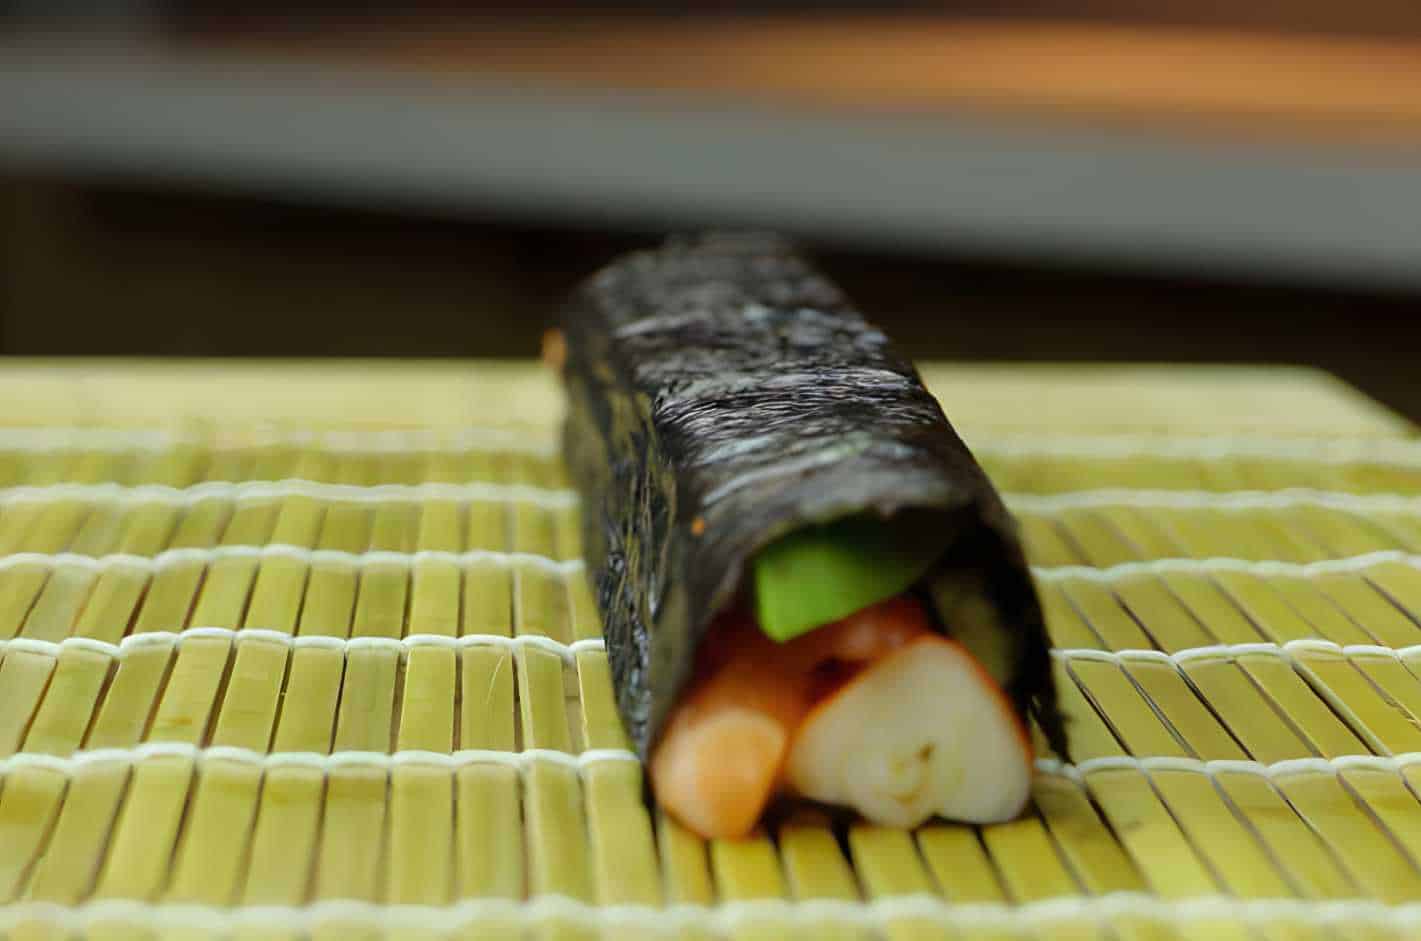 sushi without rice